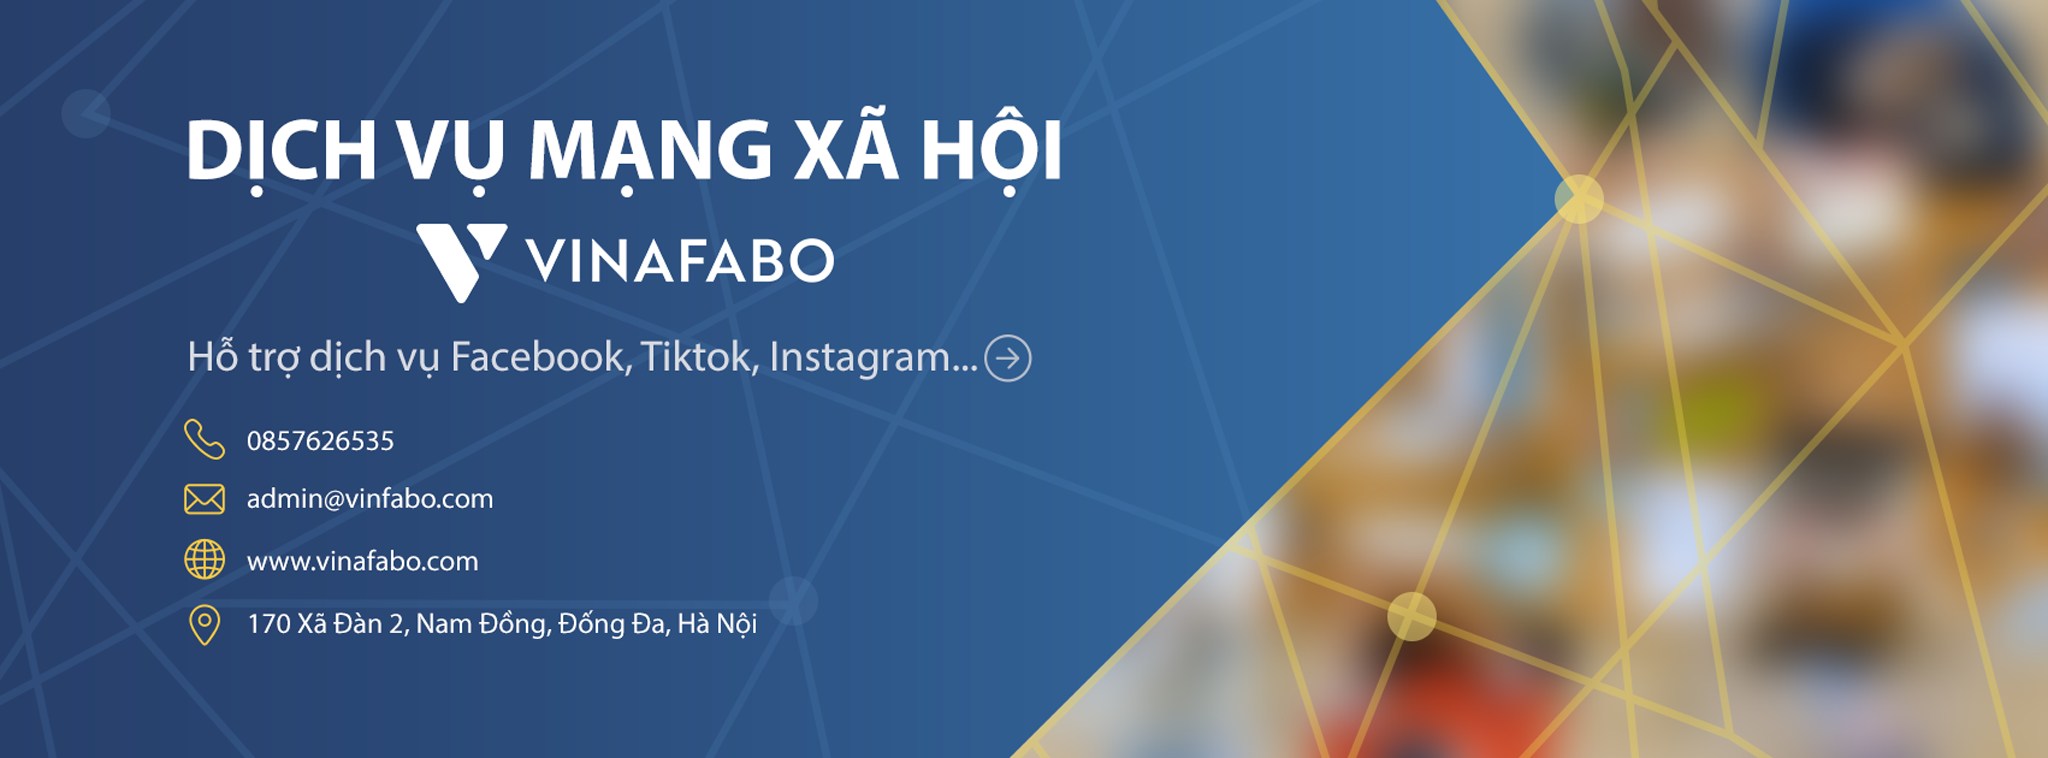 VinaFabo - Dịch vụ tăng like Facebook giá rẻ và chuyên nghiệp